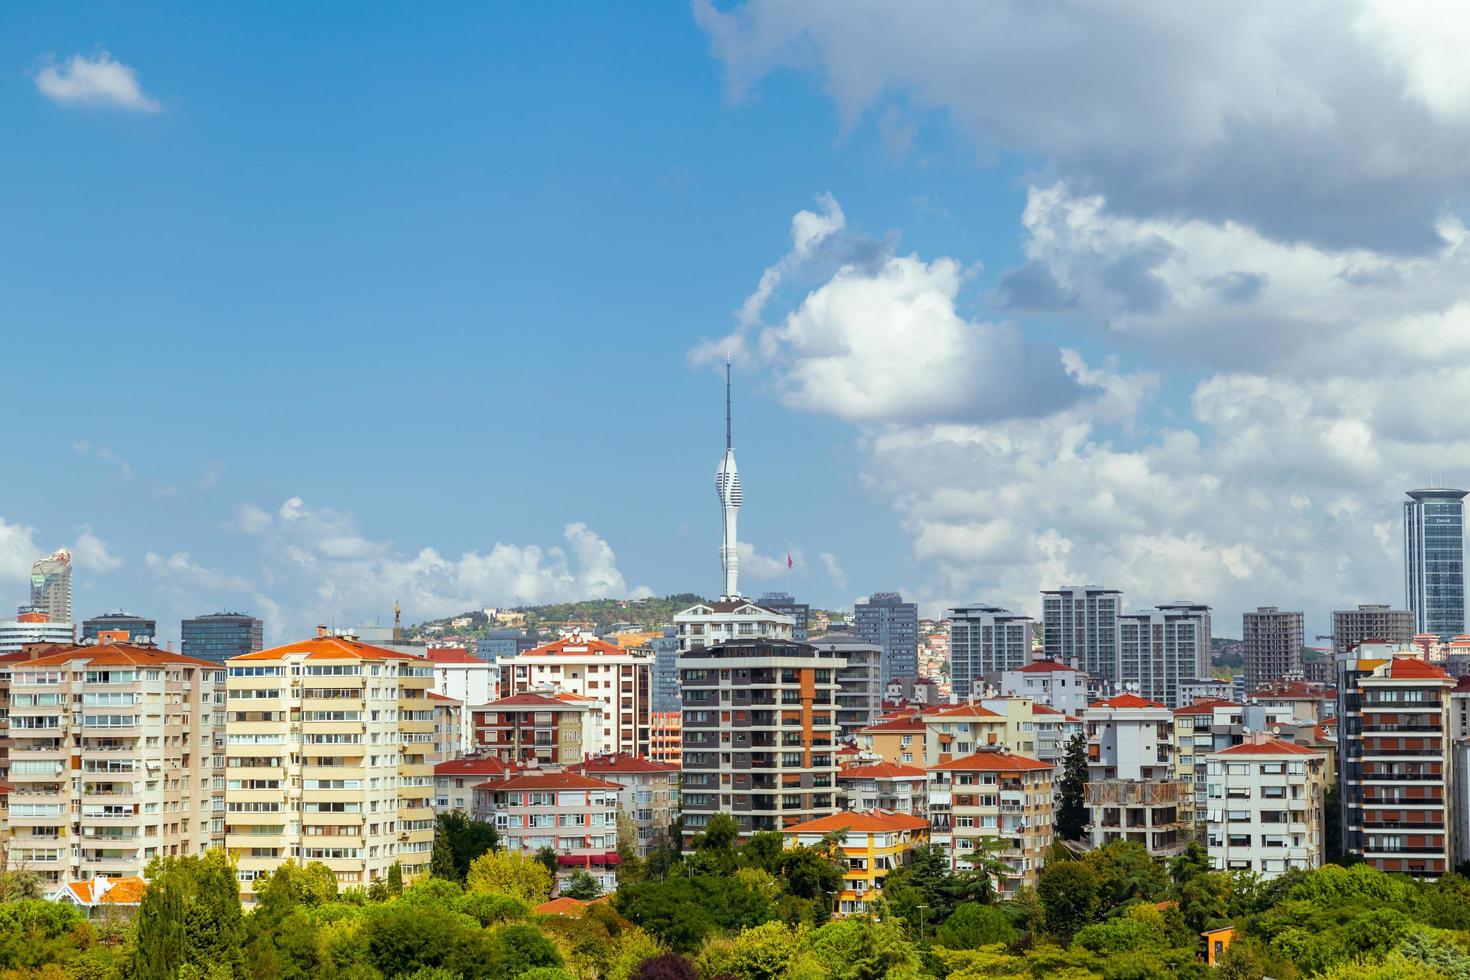 nuova torre radio tv kucuk camlica, torre delle telecomunicazioni con ponti di osservazione e ristoranti nel quartiere uskudar di istanbul foto